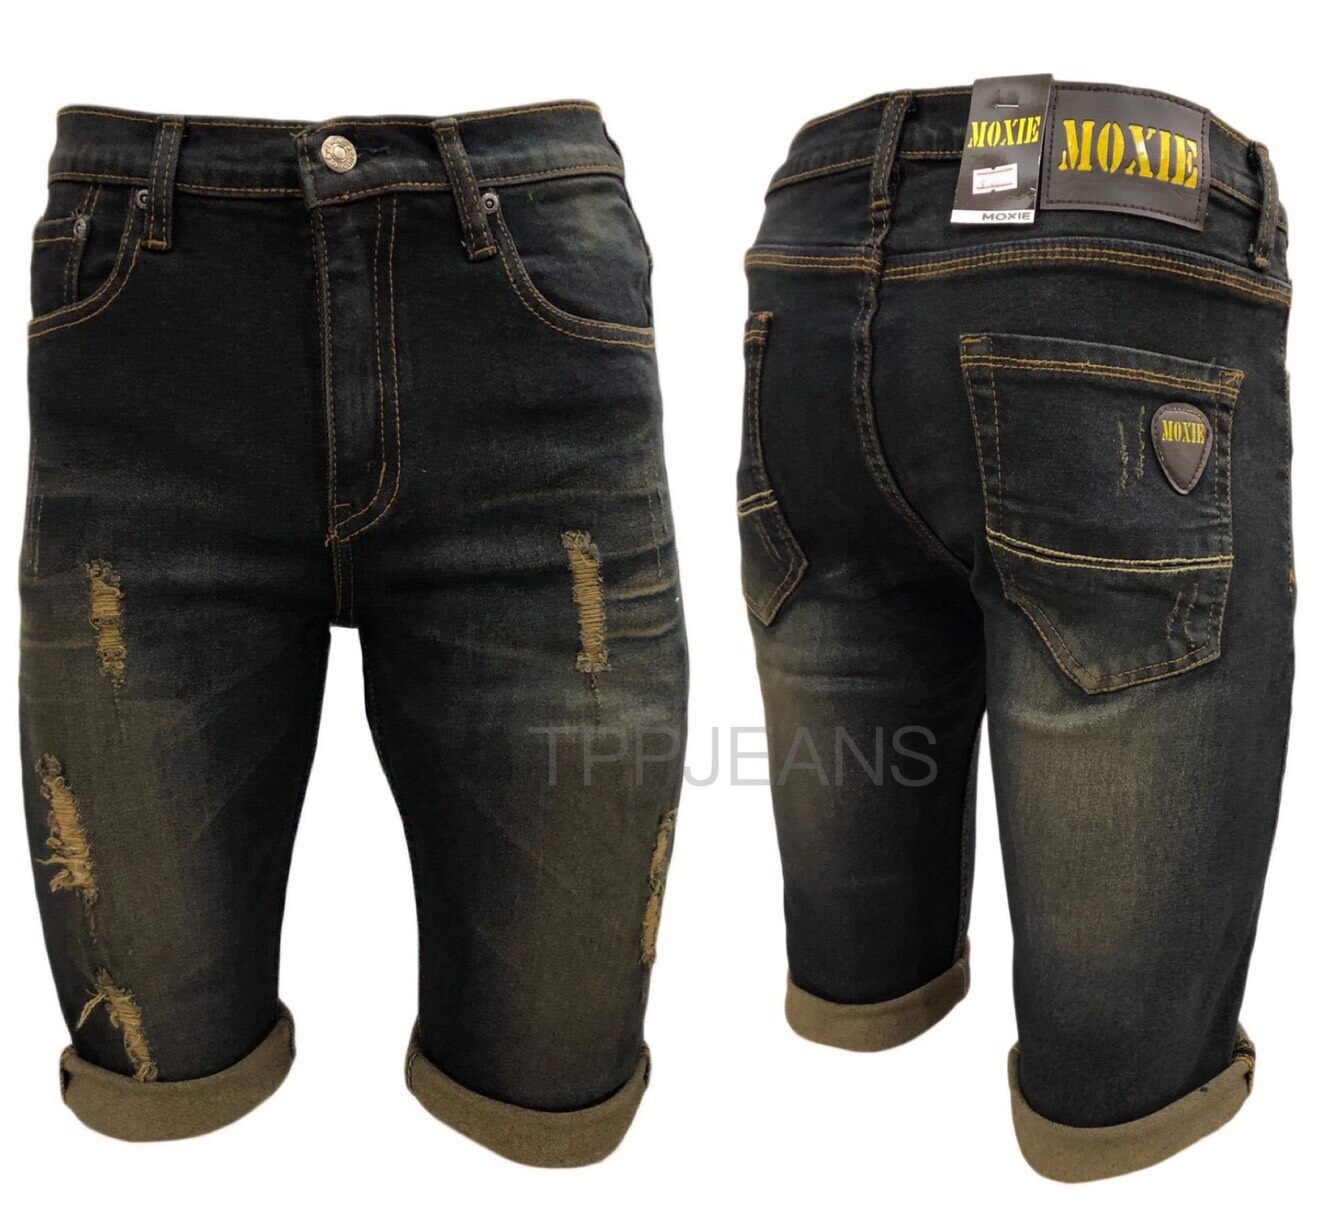 TPPJEANS MOXIE Men's Shorts Denim กางเกงยีนส์ขาสั้นผ้ายืด สีฟอกสนิมแต่งขาด งานตัดเย็บอย่างดีเป้าซิป Size 26-42 รับชำระปลายทาง